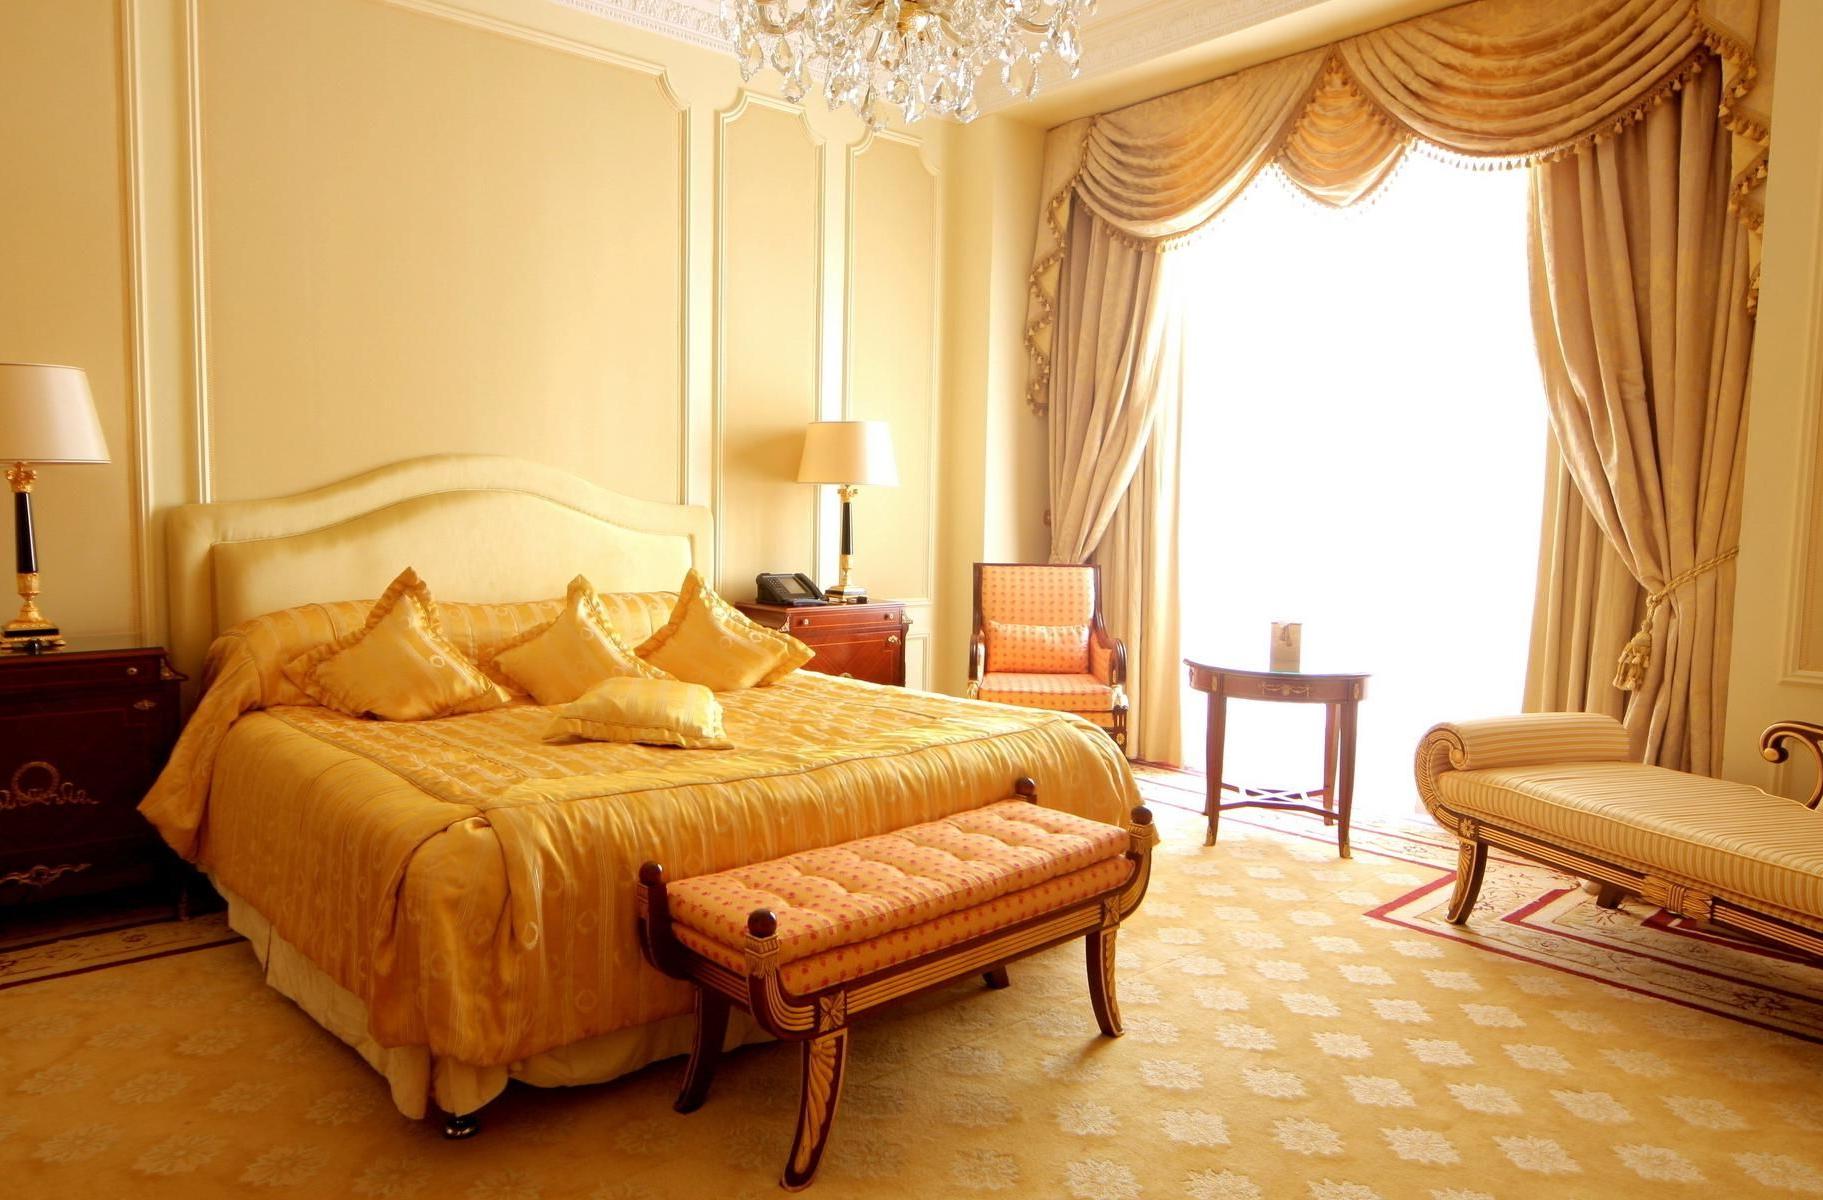 Светлая, просторная спальная комната в стиле барокко с панорамными окнами. 